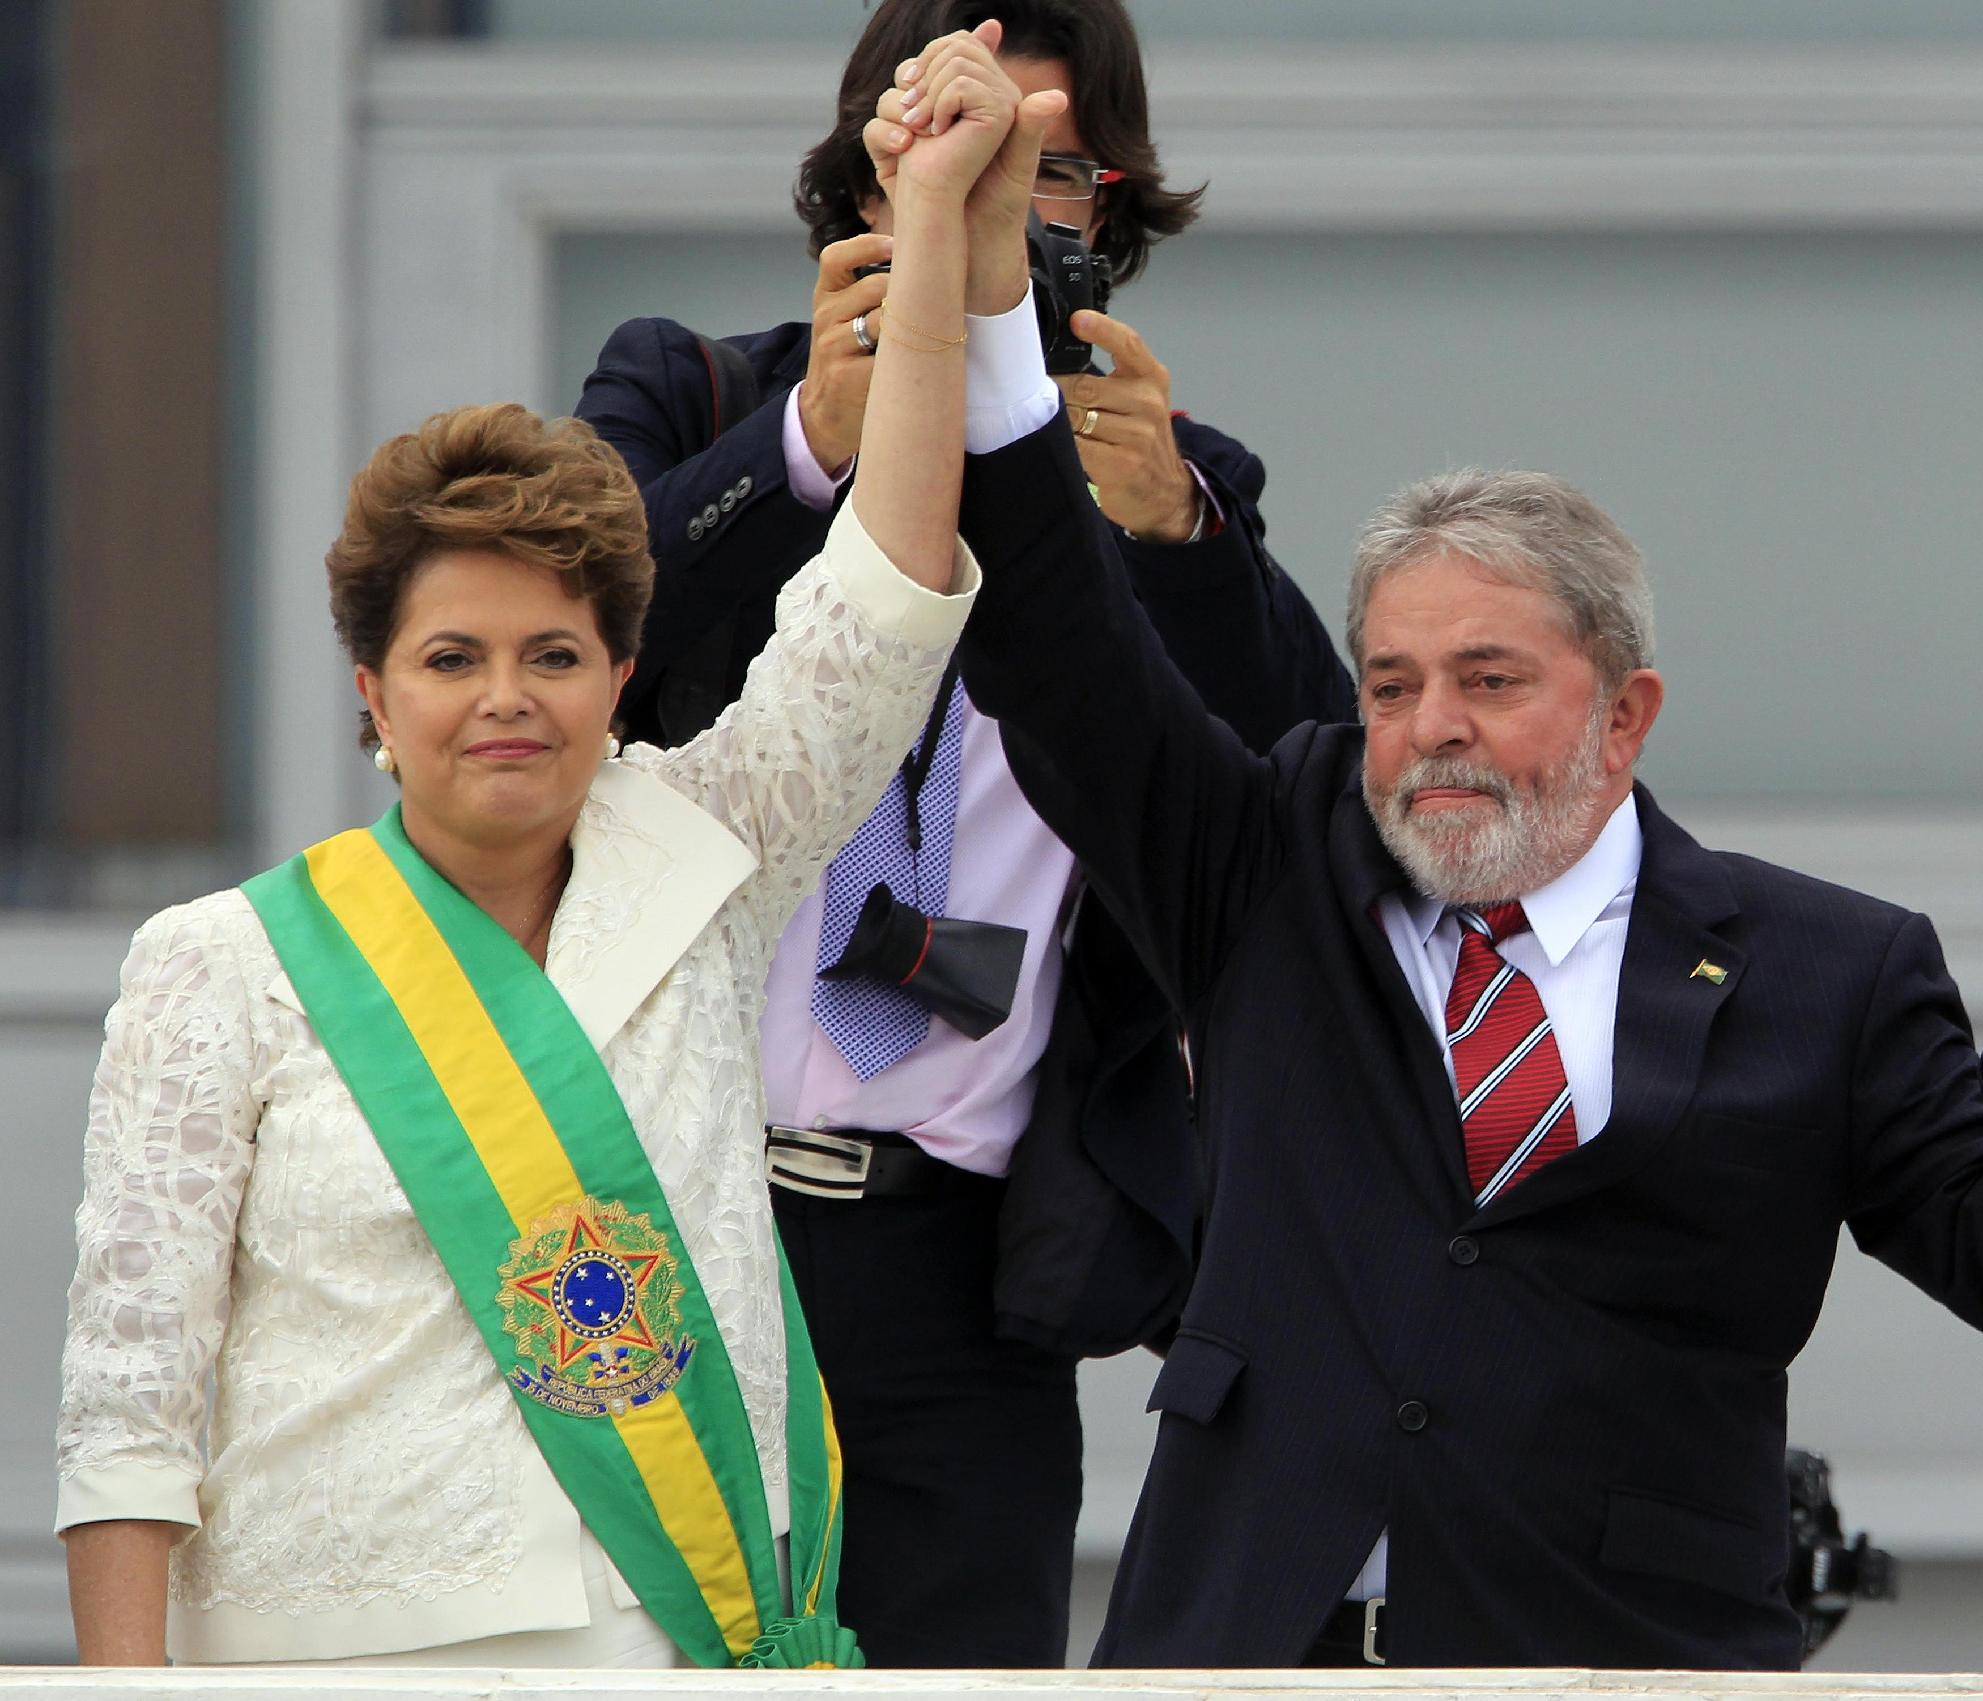 Για δωροδοκία και νοθεία κατηγορείται συνεργάτης του πρώην προέδρου Λούλα